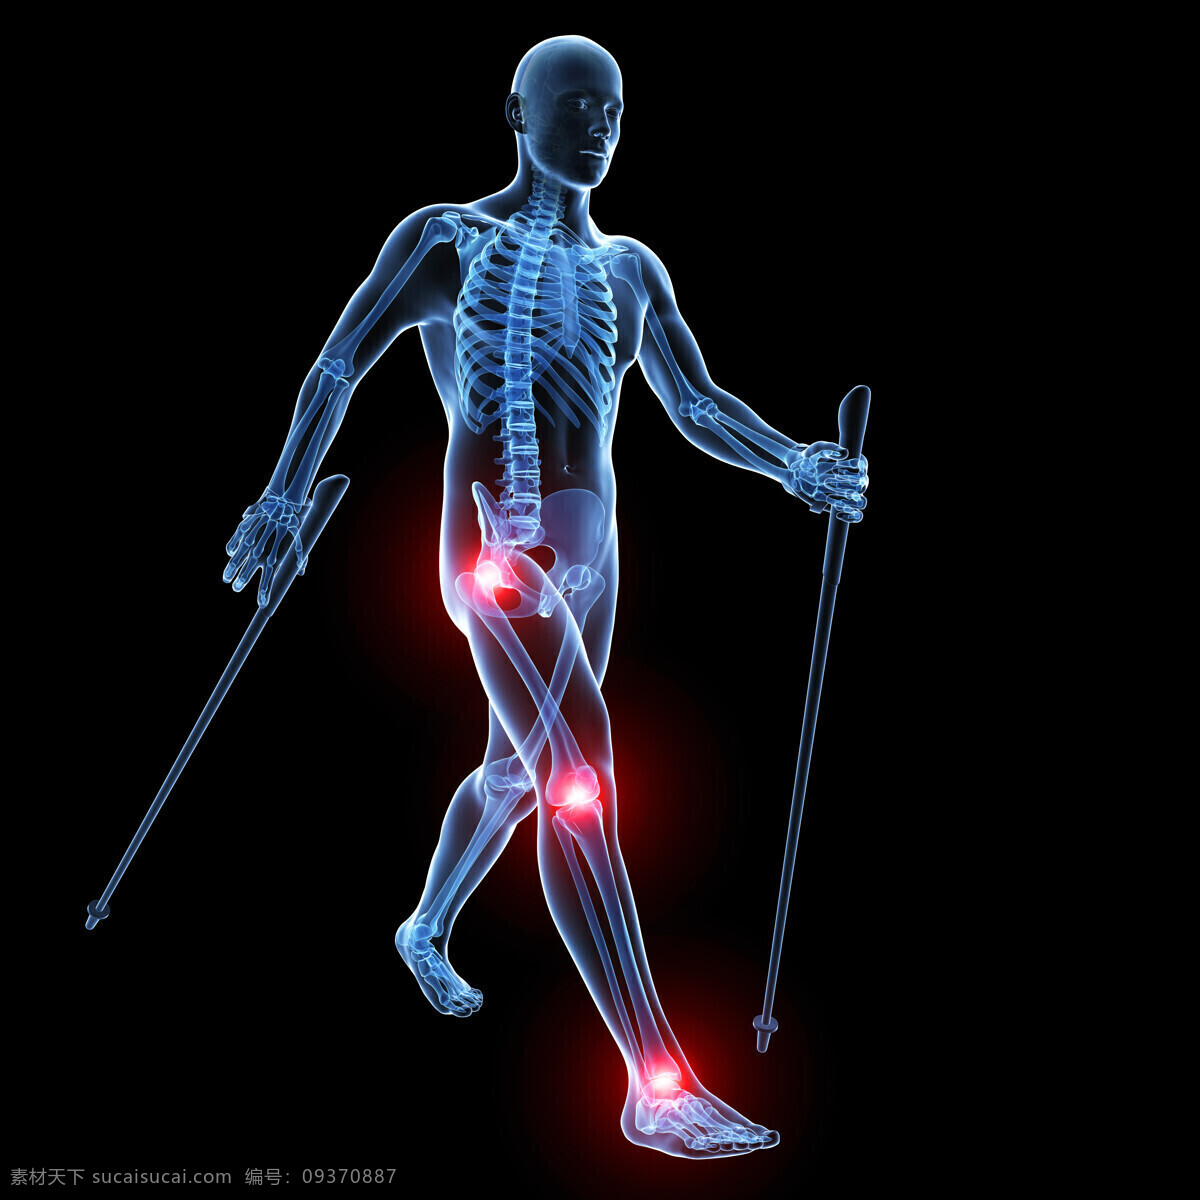 人体 医疗 透视图 医学 男性 男人 身体 模型 3d模型 立体图 病症 症状 关节 疼痛 酸痛 受伤 运动损伤 腿部 拐杖 拐棍 x光透射 骨骼 人体构造 高清图片 交通工具 现代科技